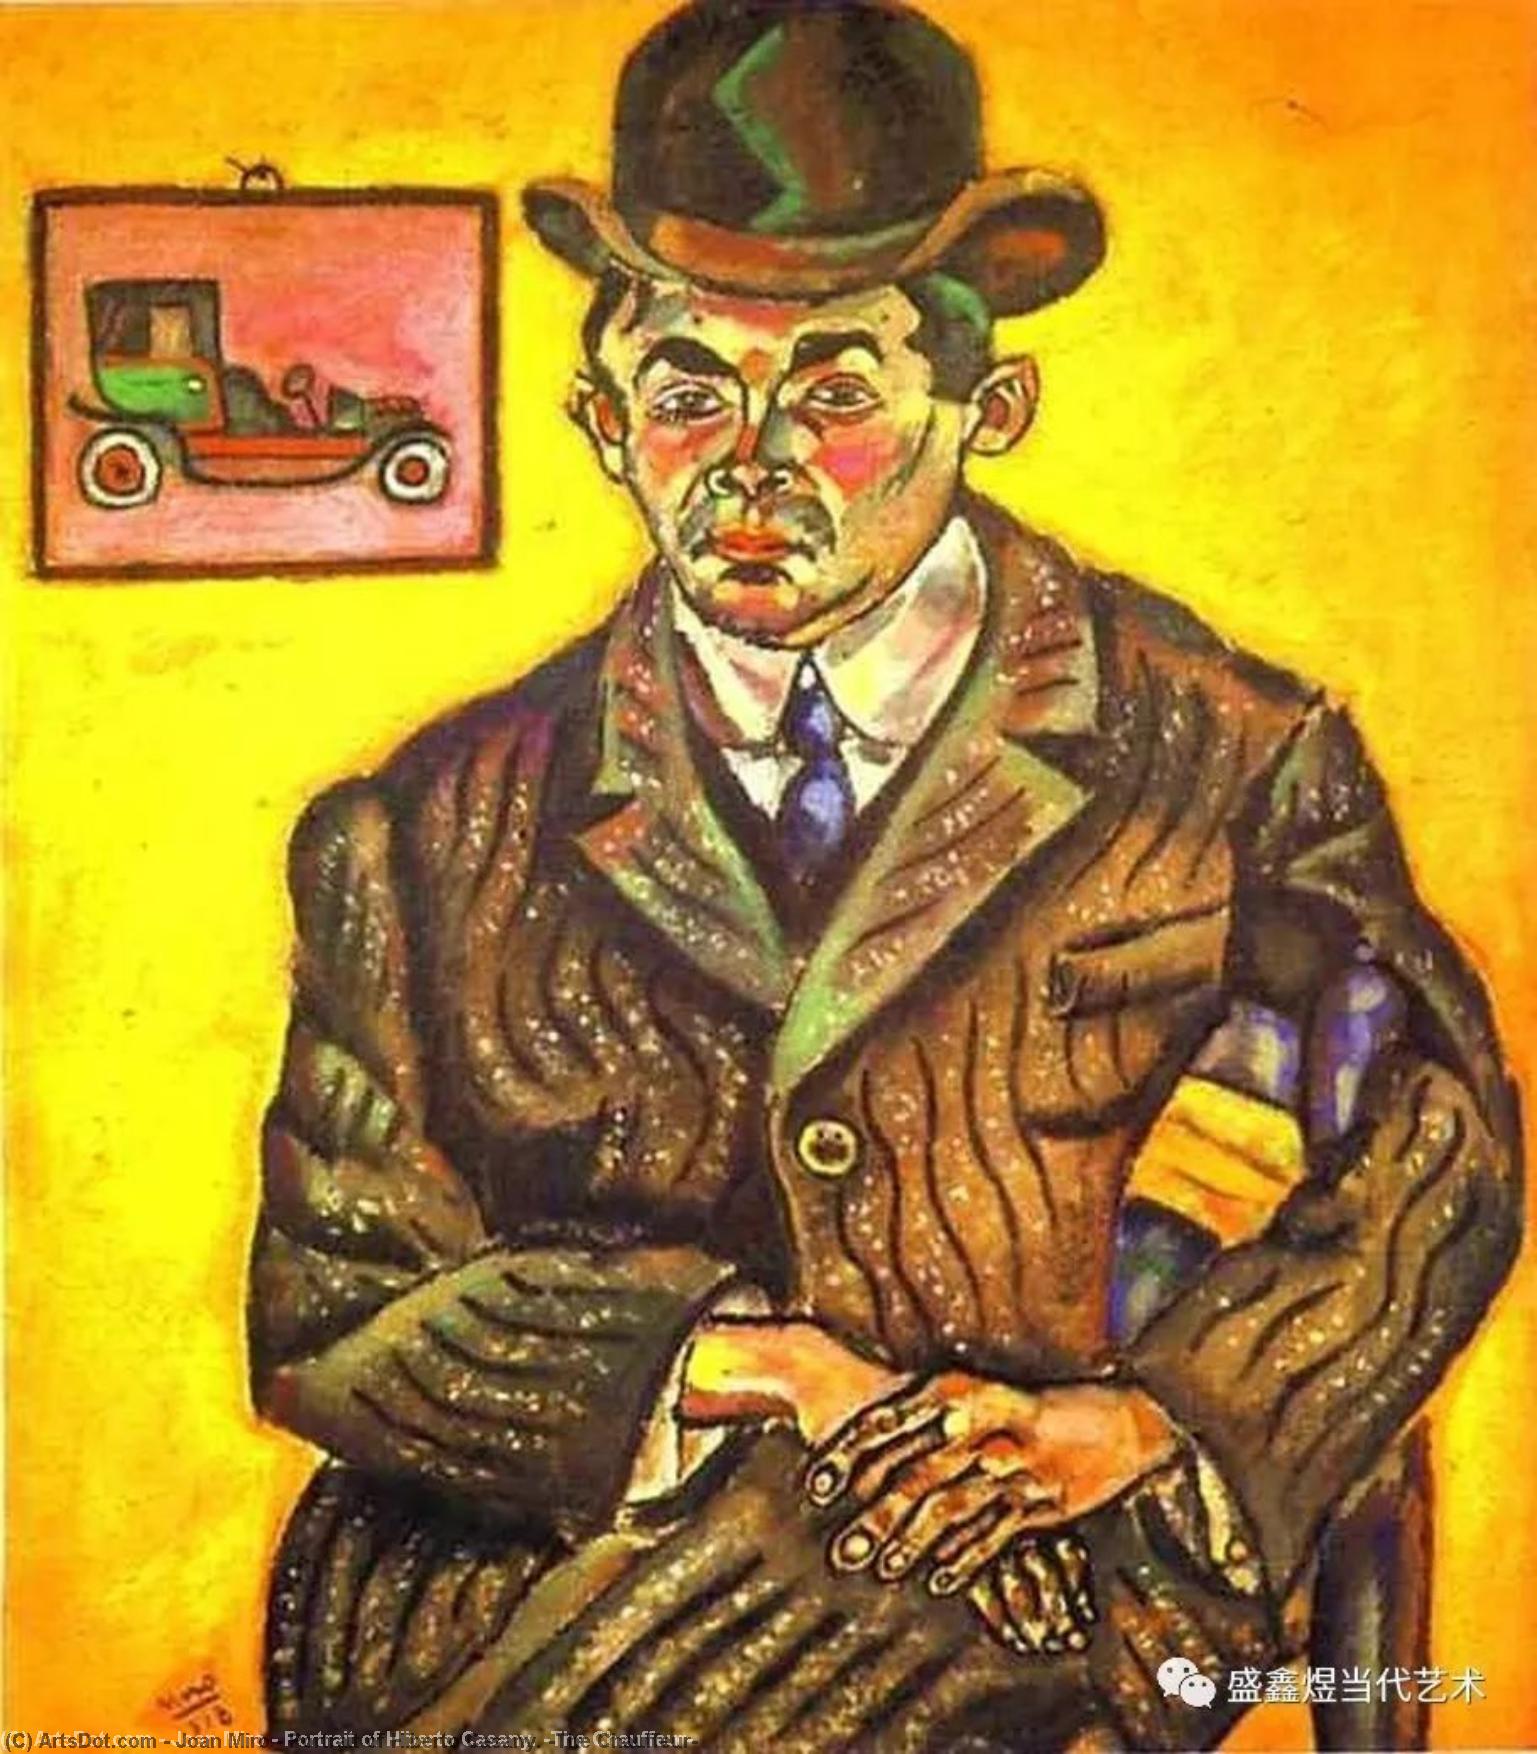 WikiOO.org - Encyclopedia of Fine Arts - Målning, konstverk Joan Miro - Portrait of Hiberto Casany. (The Chauffeur)